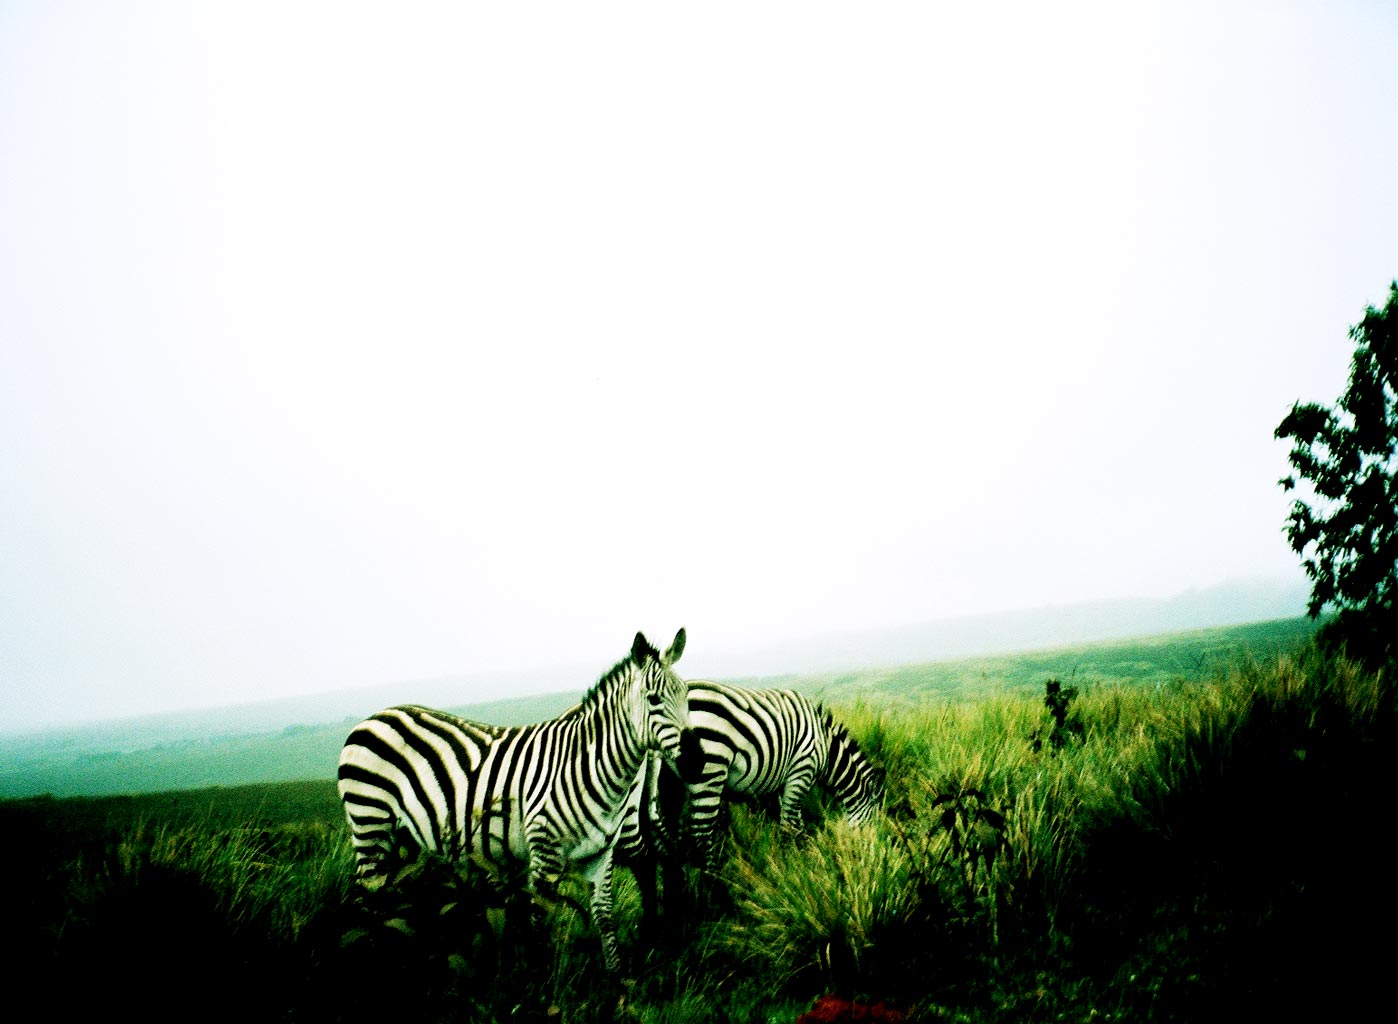 zebras in Tanzania Africa